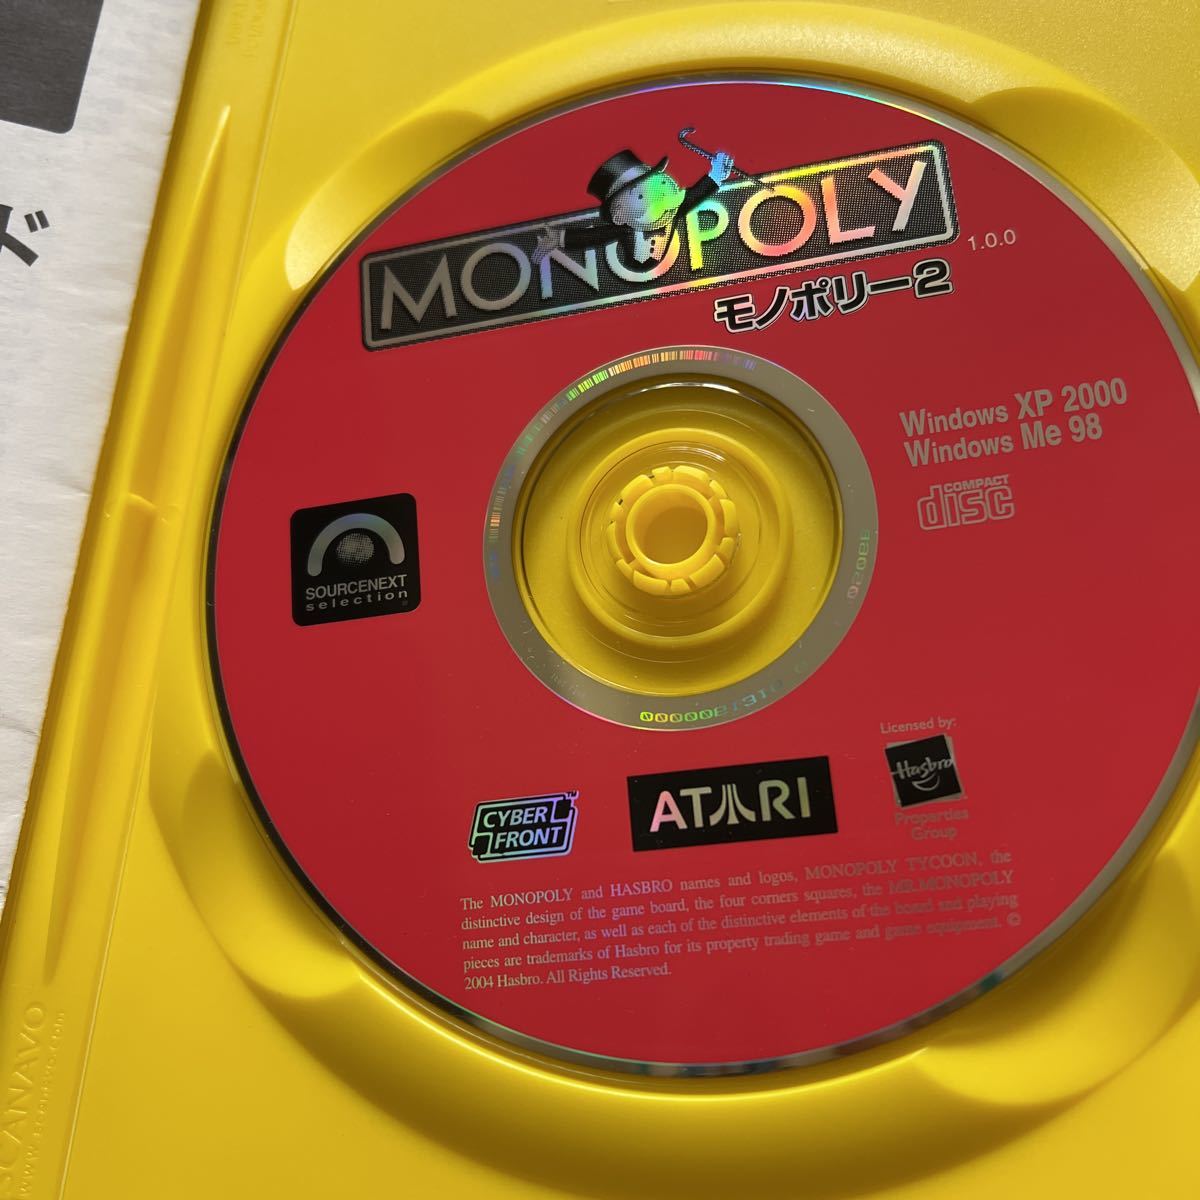 匿名配送 送料無料 ソースネクスト モノポリー2 MONOPOLY PC用ゲーム windows XP/2000/Me/98 パソコンゲーム パソコンソフトの画像4